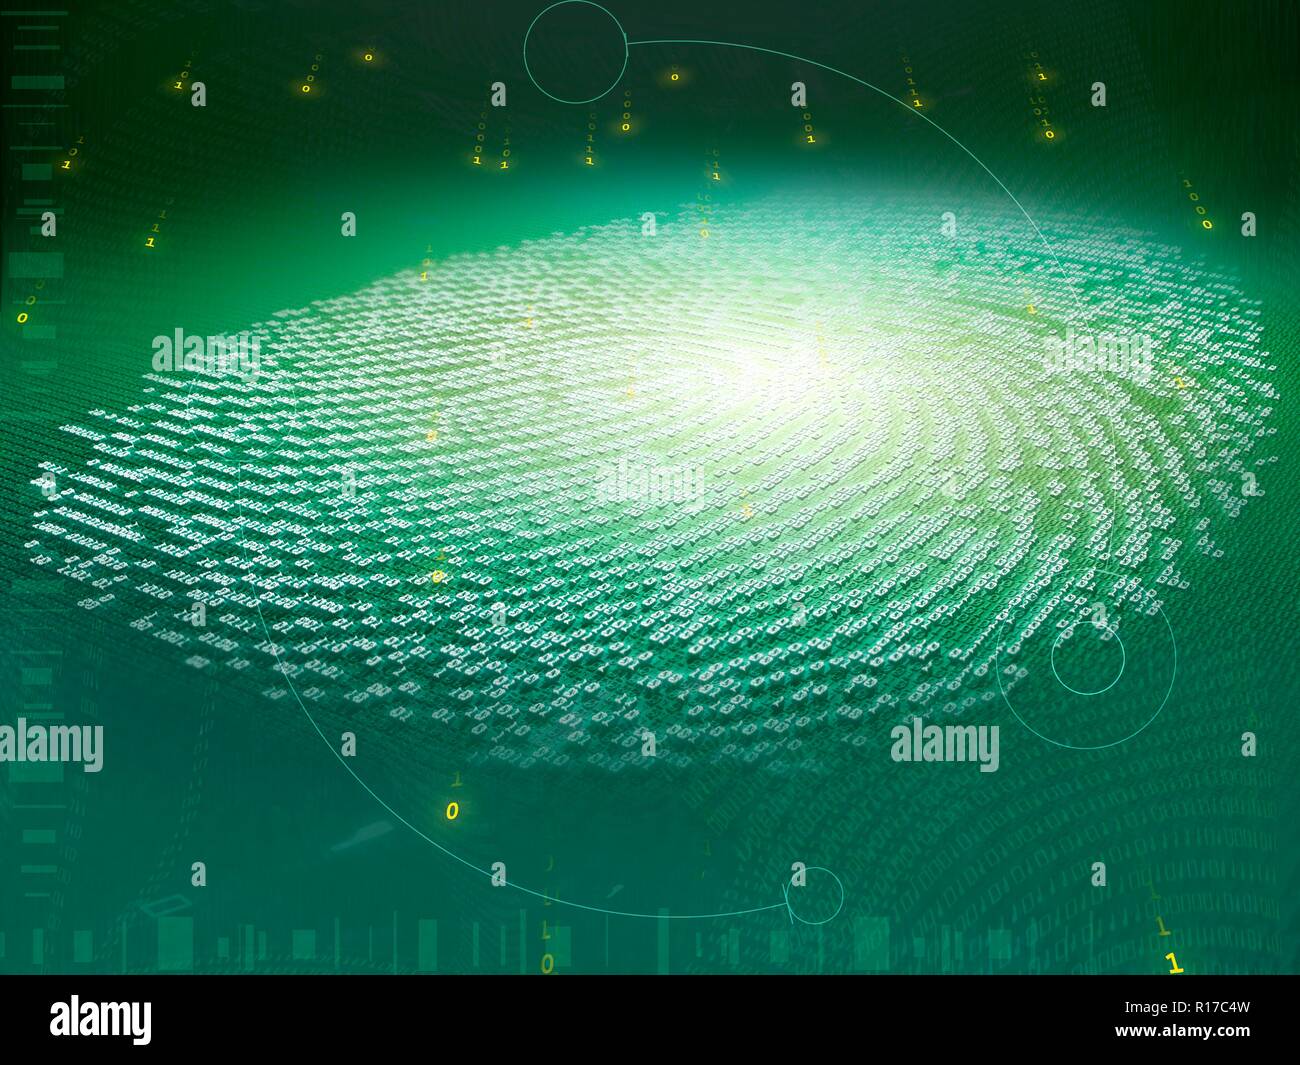 Digitaler Fingerabdruck. Abbildung eines menschlichen Fingerabdruck dargestellt als eine Reihe von Einsen und Nullen, die binären Code in Computing verwendet. Stockfoto